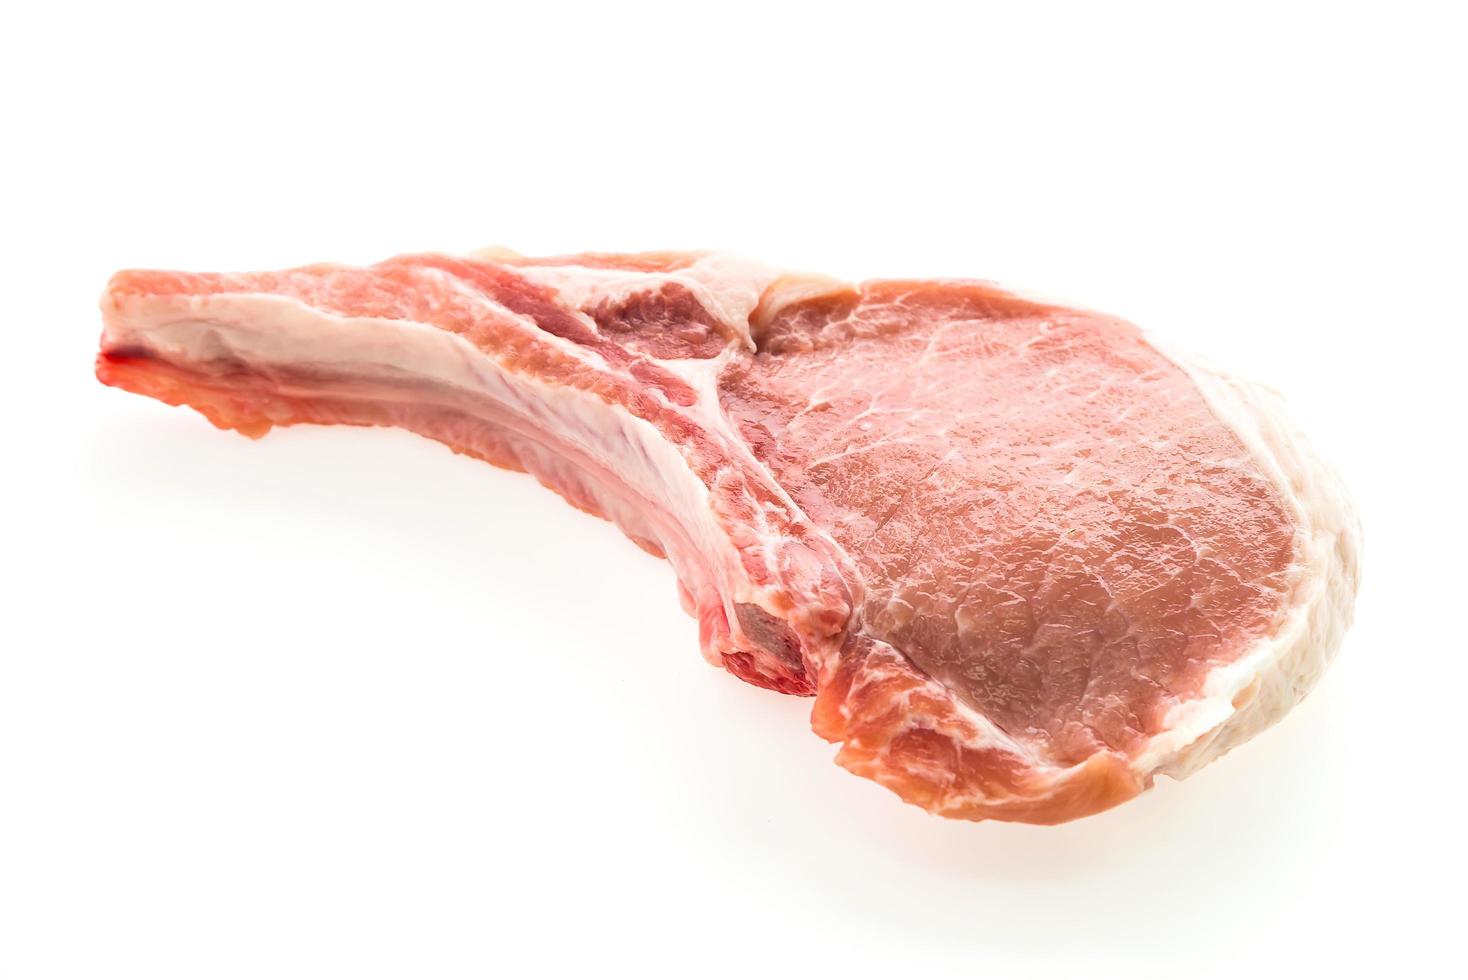 rauw lamsvlees varkensvlees foto